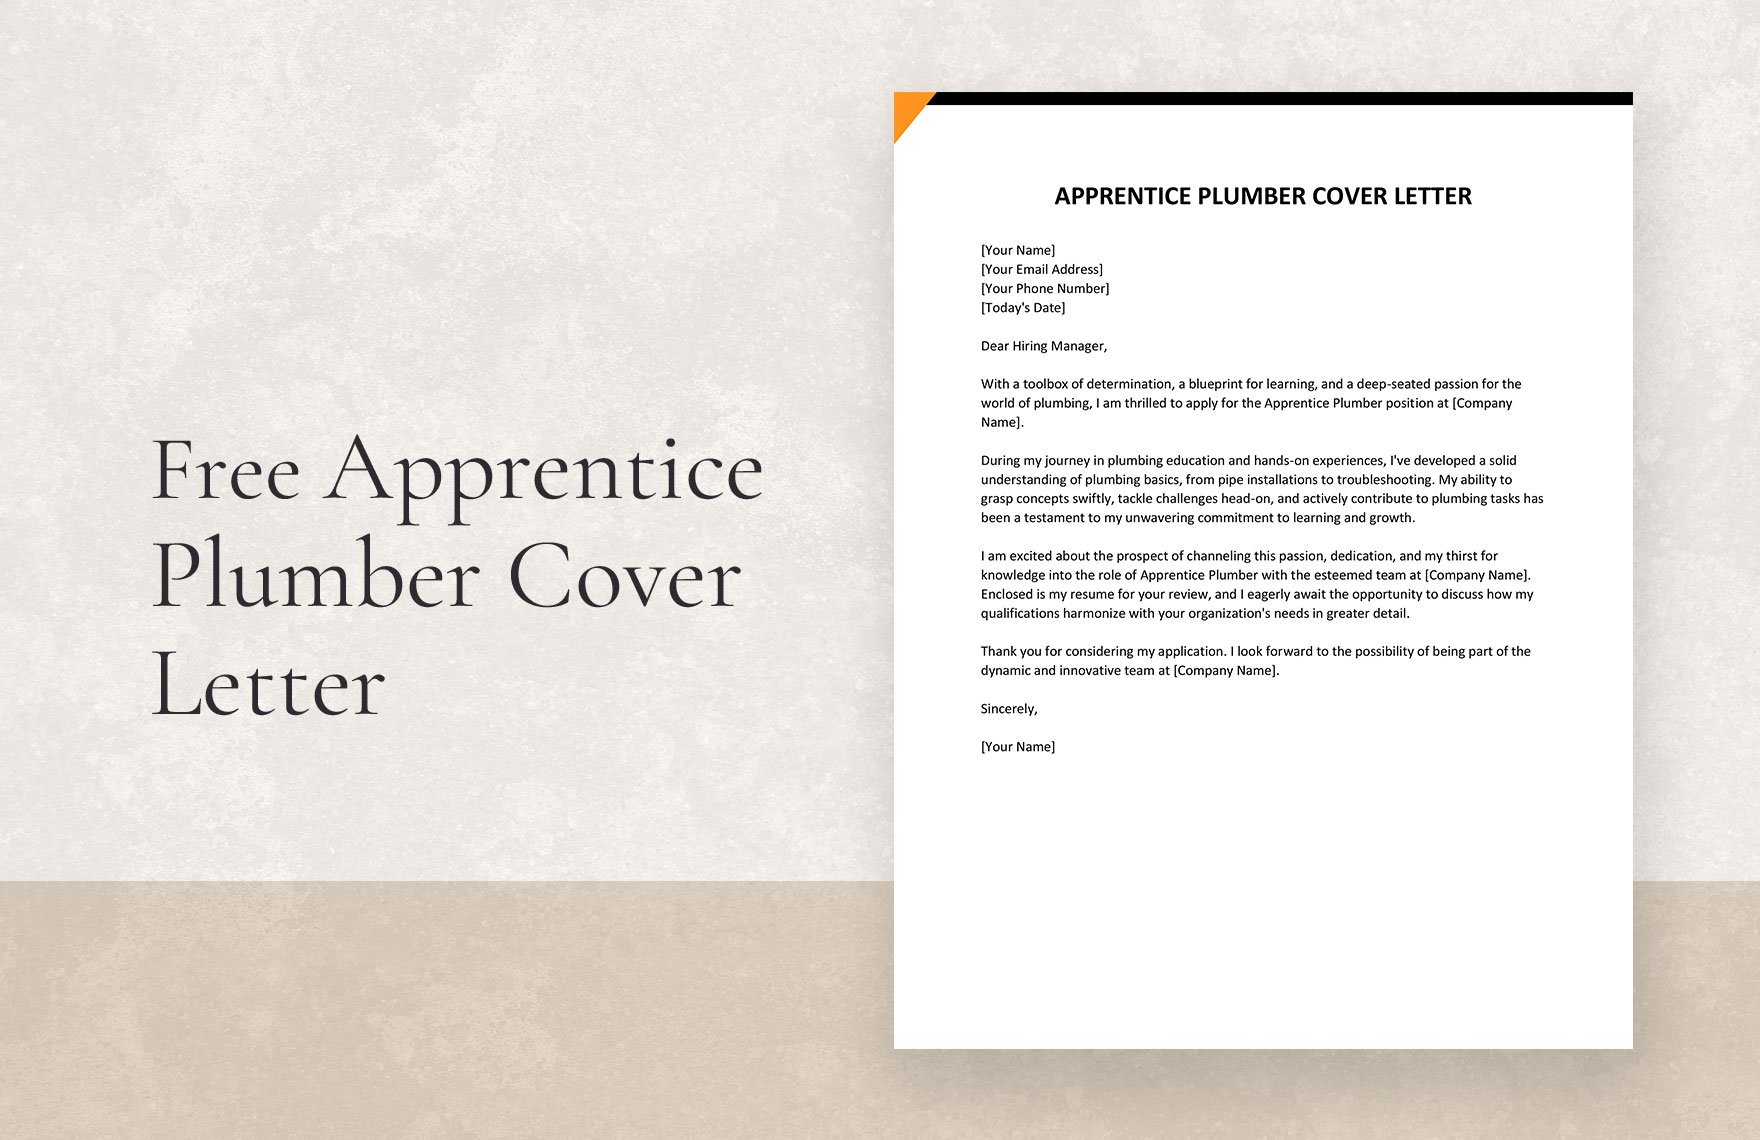 Apprentice Plumber Cover Letter in Word, Google Docs